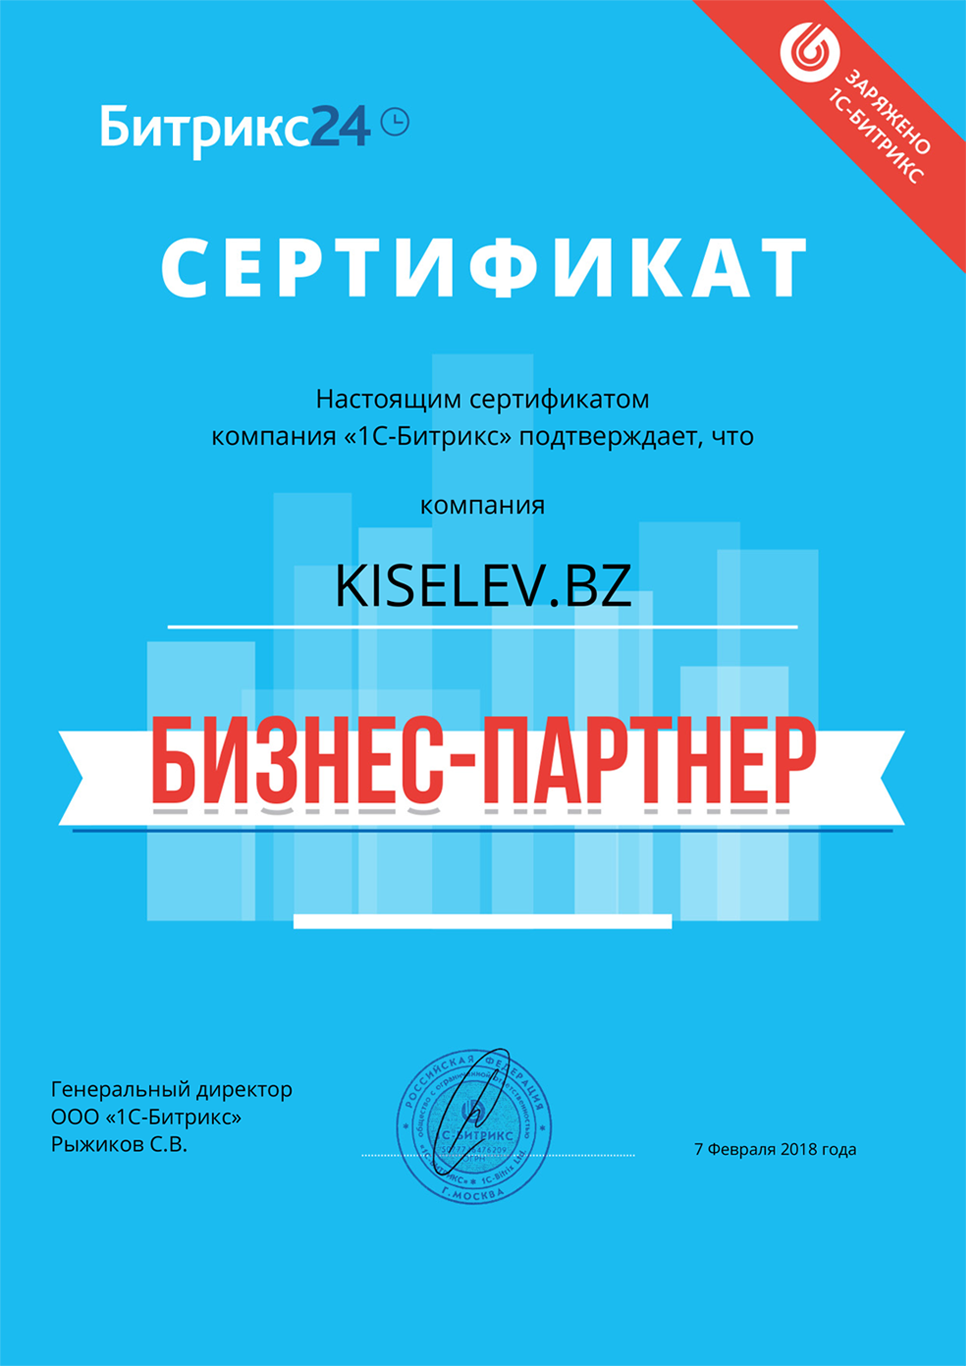 Сертификат партнёра по АМОСРМ в Сычевке